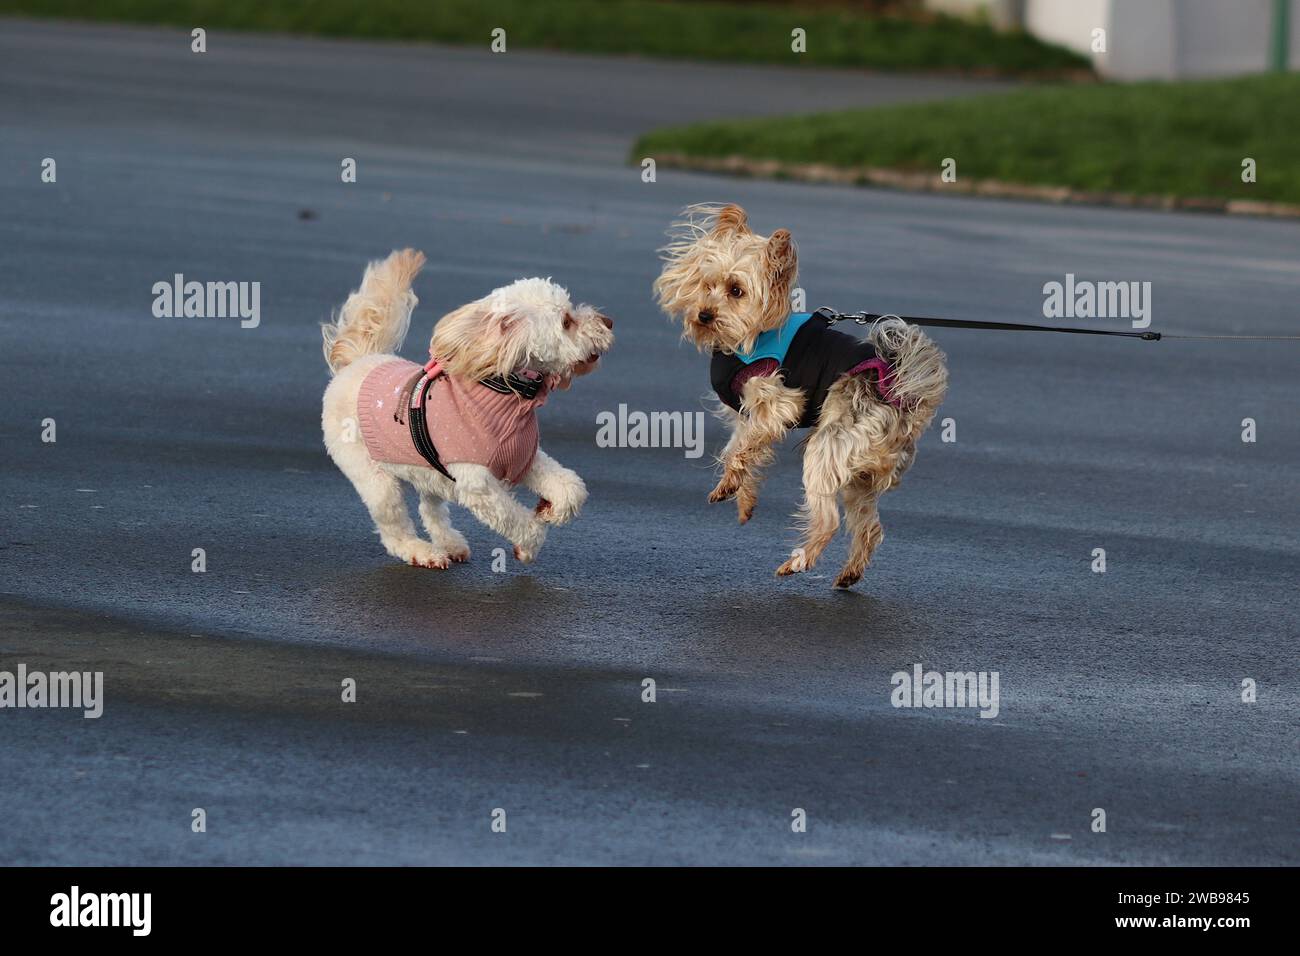 Zwei Hunde spielen aufgeregt hart und zerfallen, während sie an einem Dezembermorgen trainiert werden, während ihre Besitzer sich unterhalten. Stockfoto